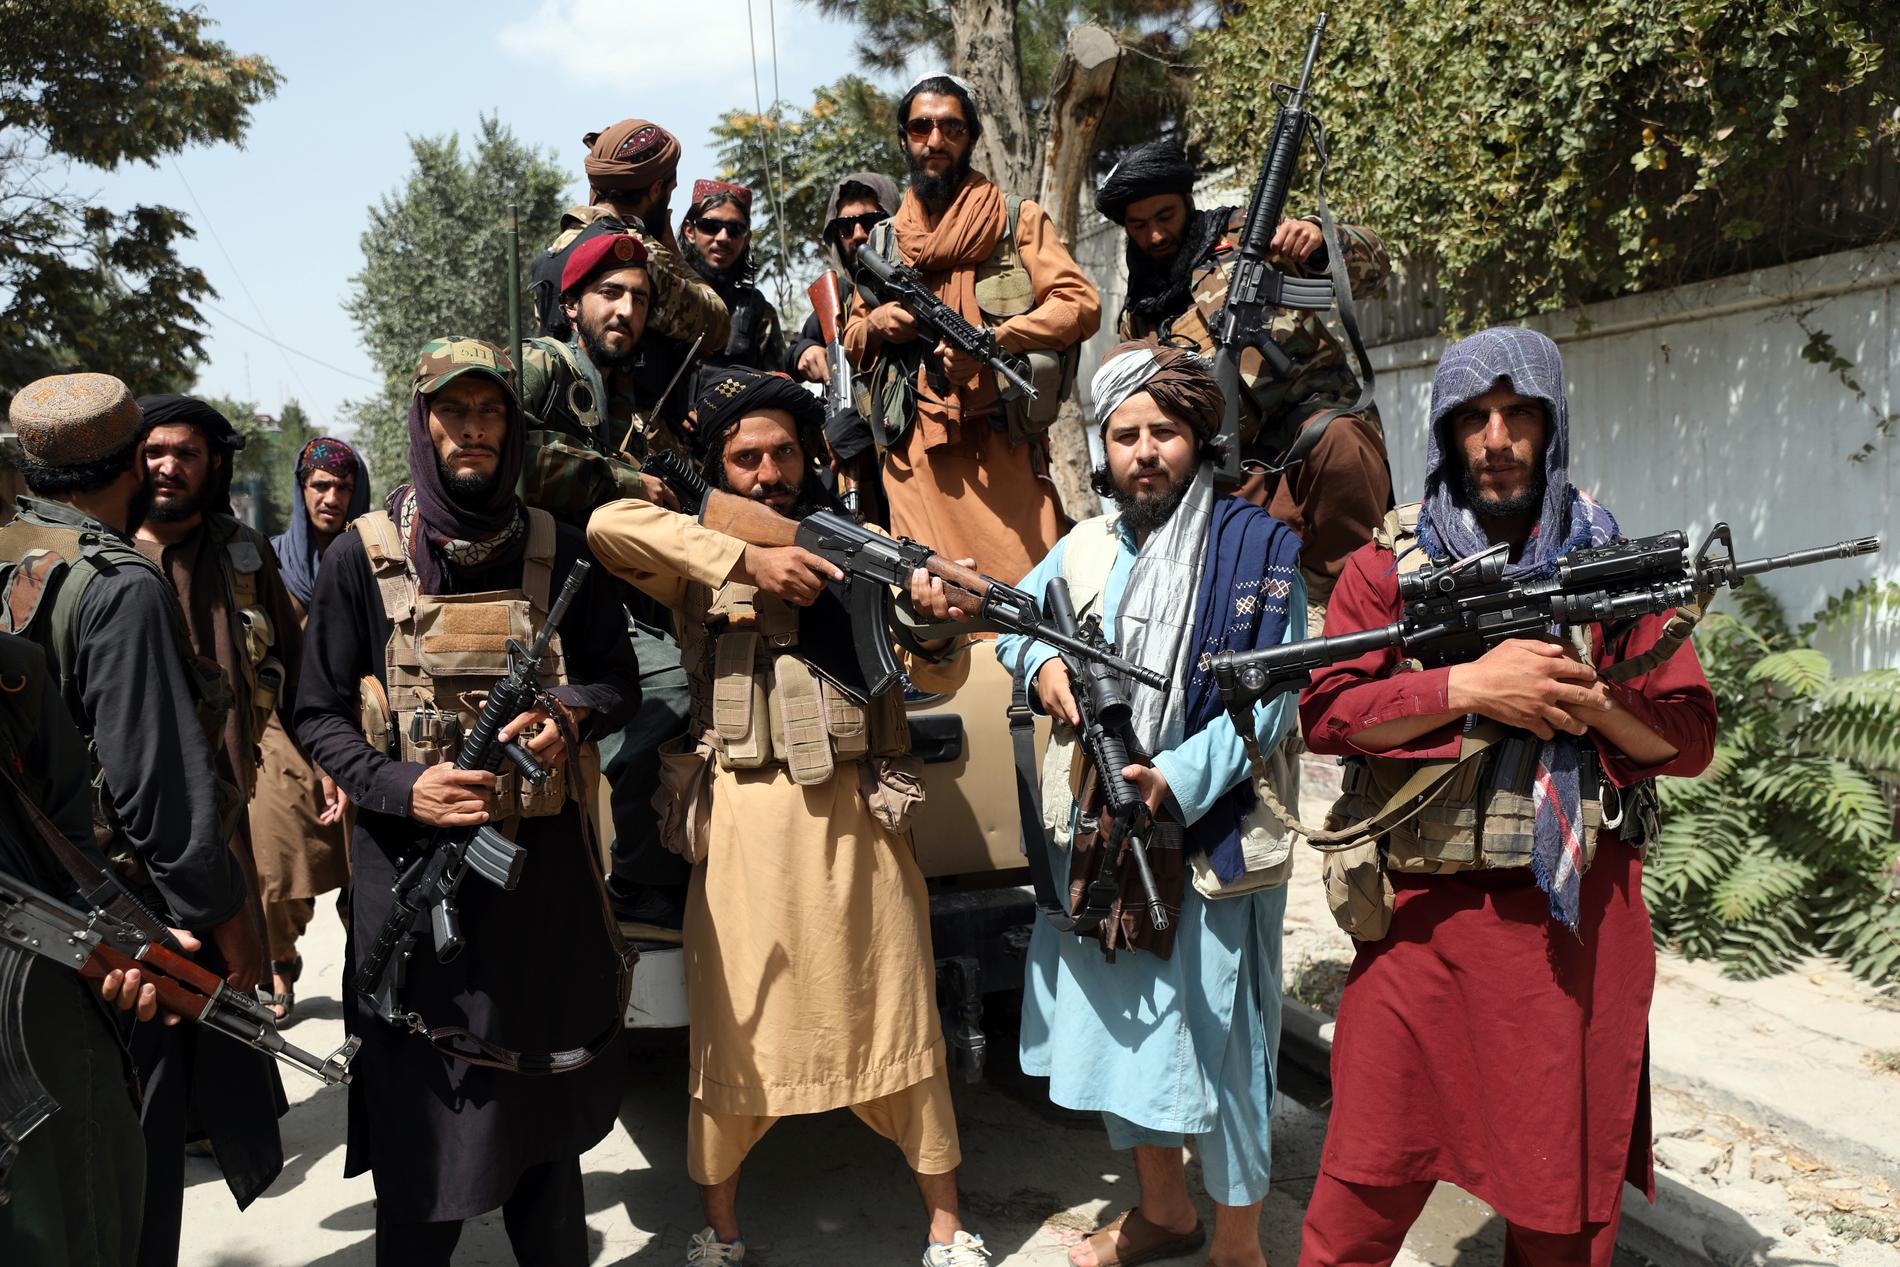 ”Talibanernas seger är en inspiration för IS, al-Qaida och radikal islamism över hela världen”, skriver Wolfgang Hansson.